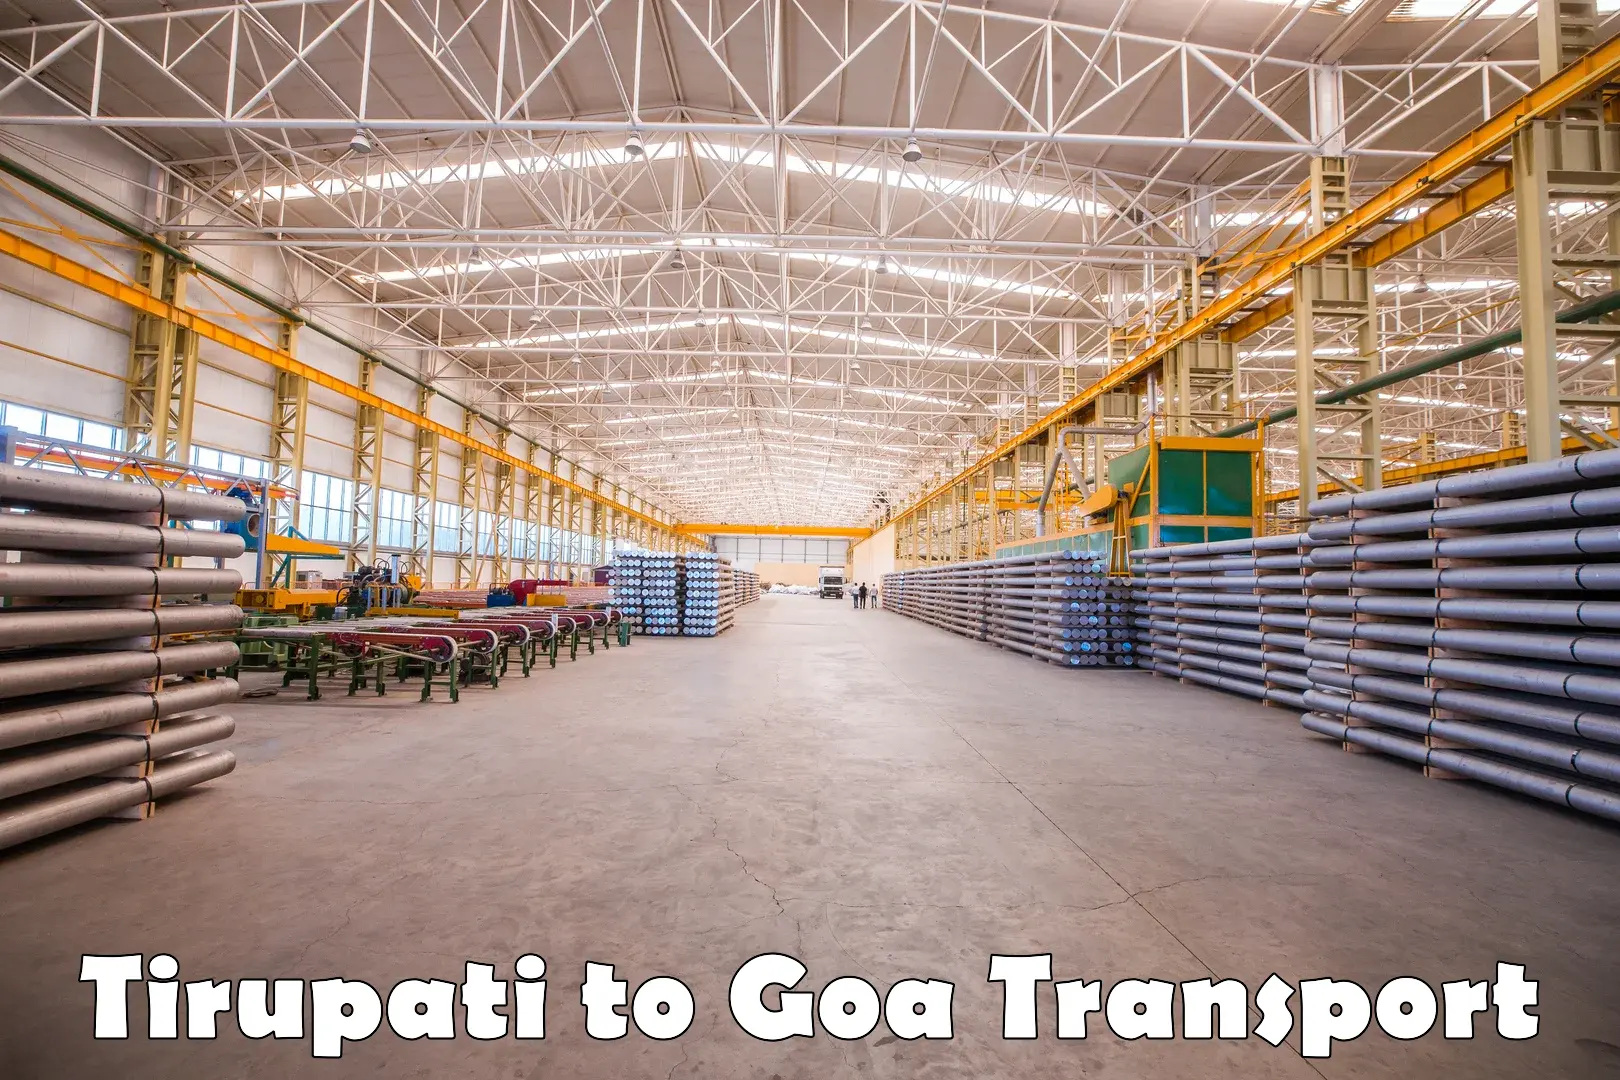 Furniture transport service Tirupati to Goa